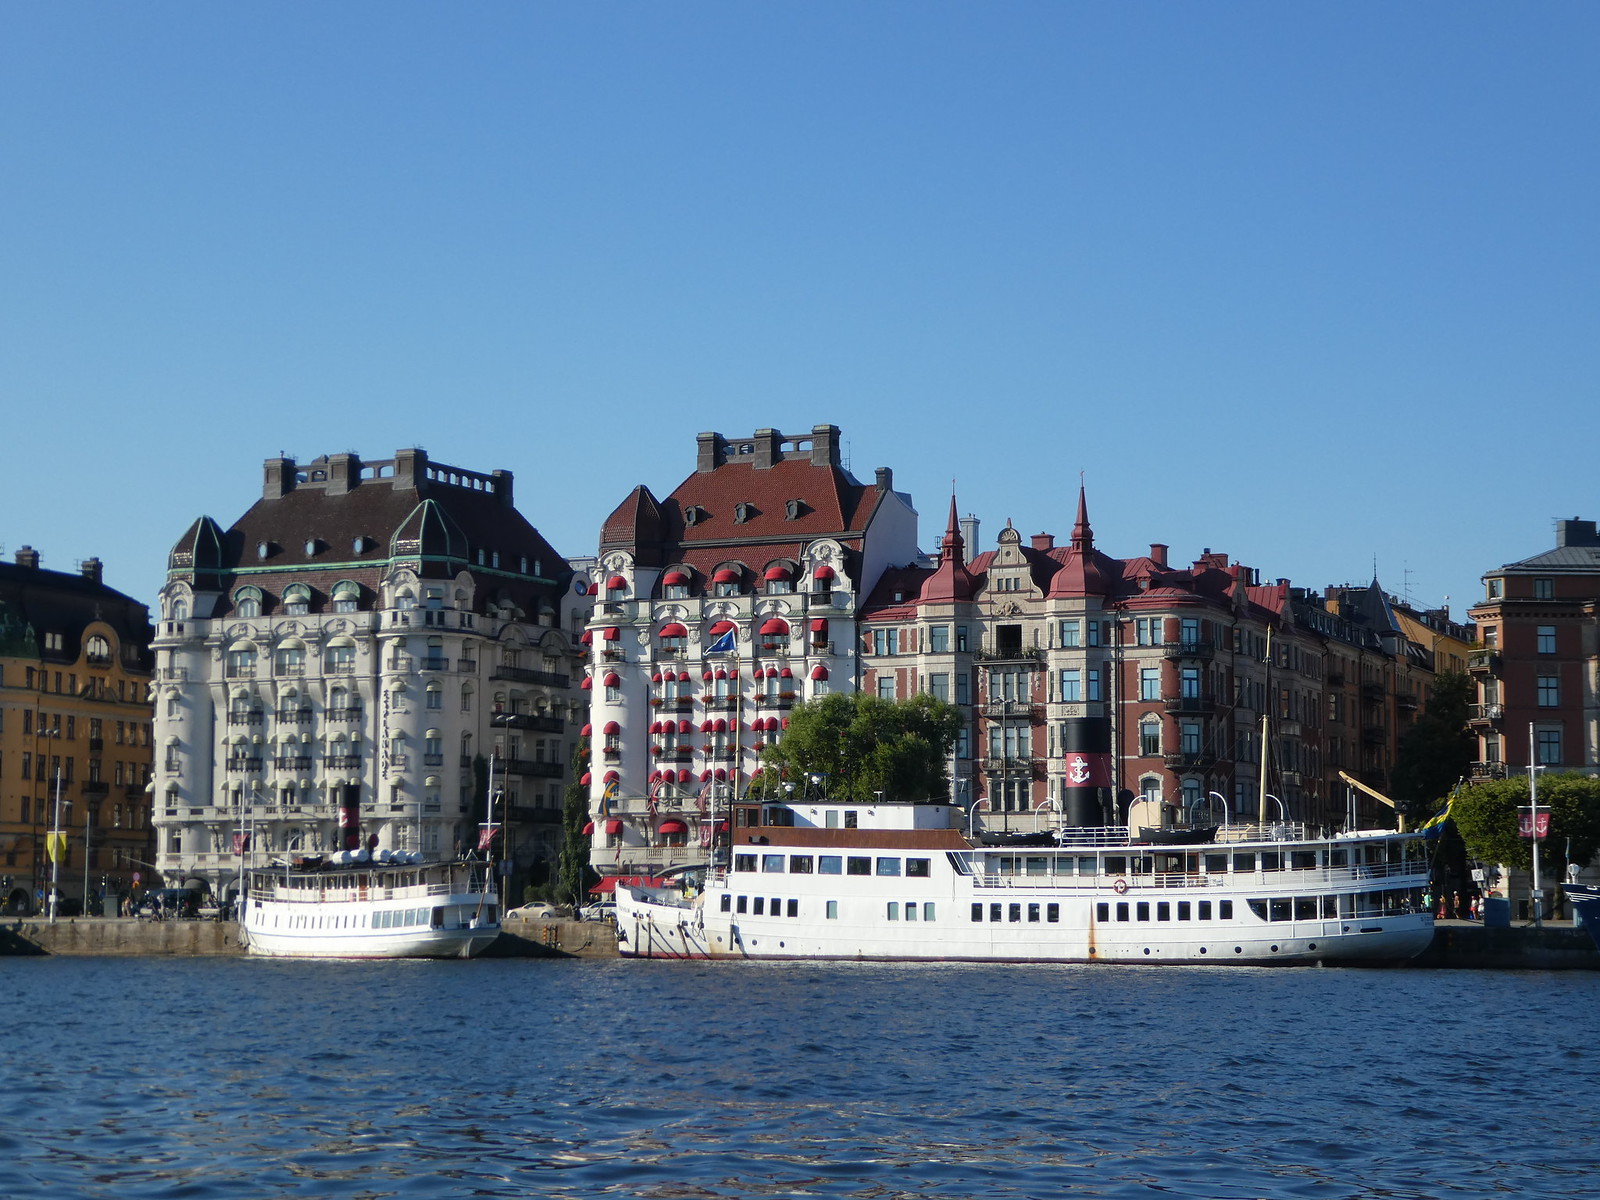 Under the Bridges boat tour, Stockholm 